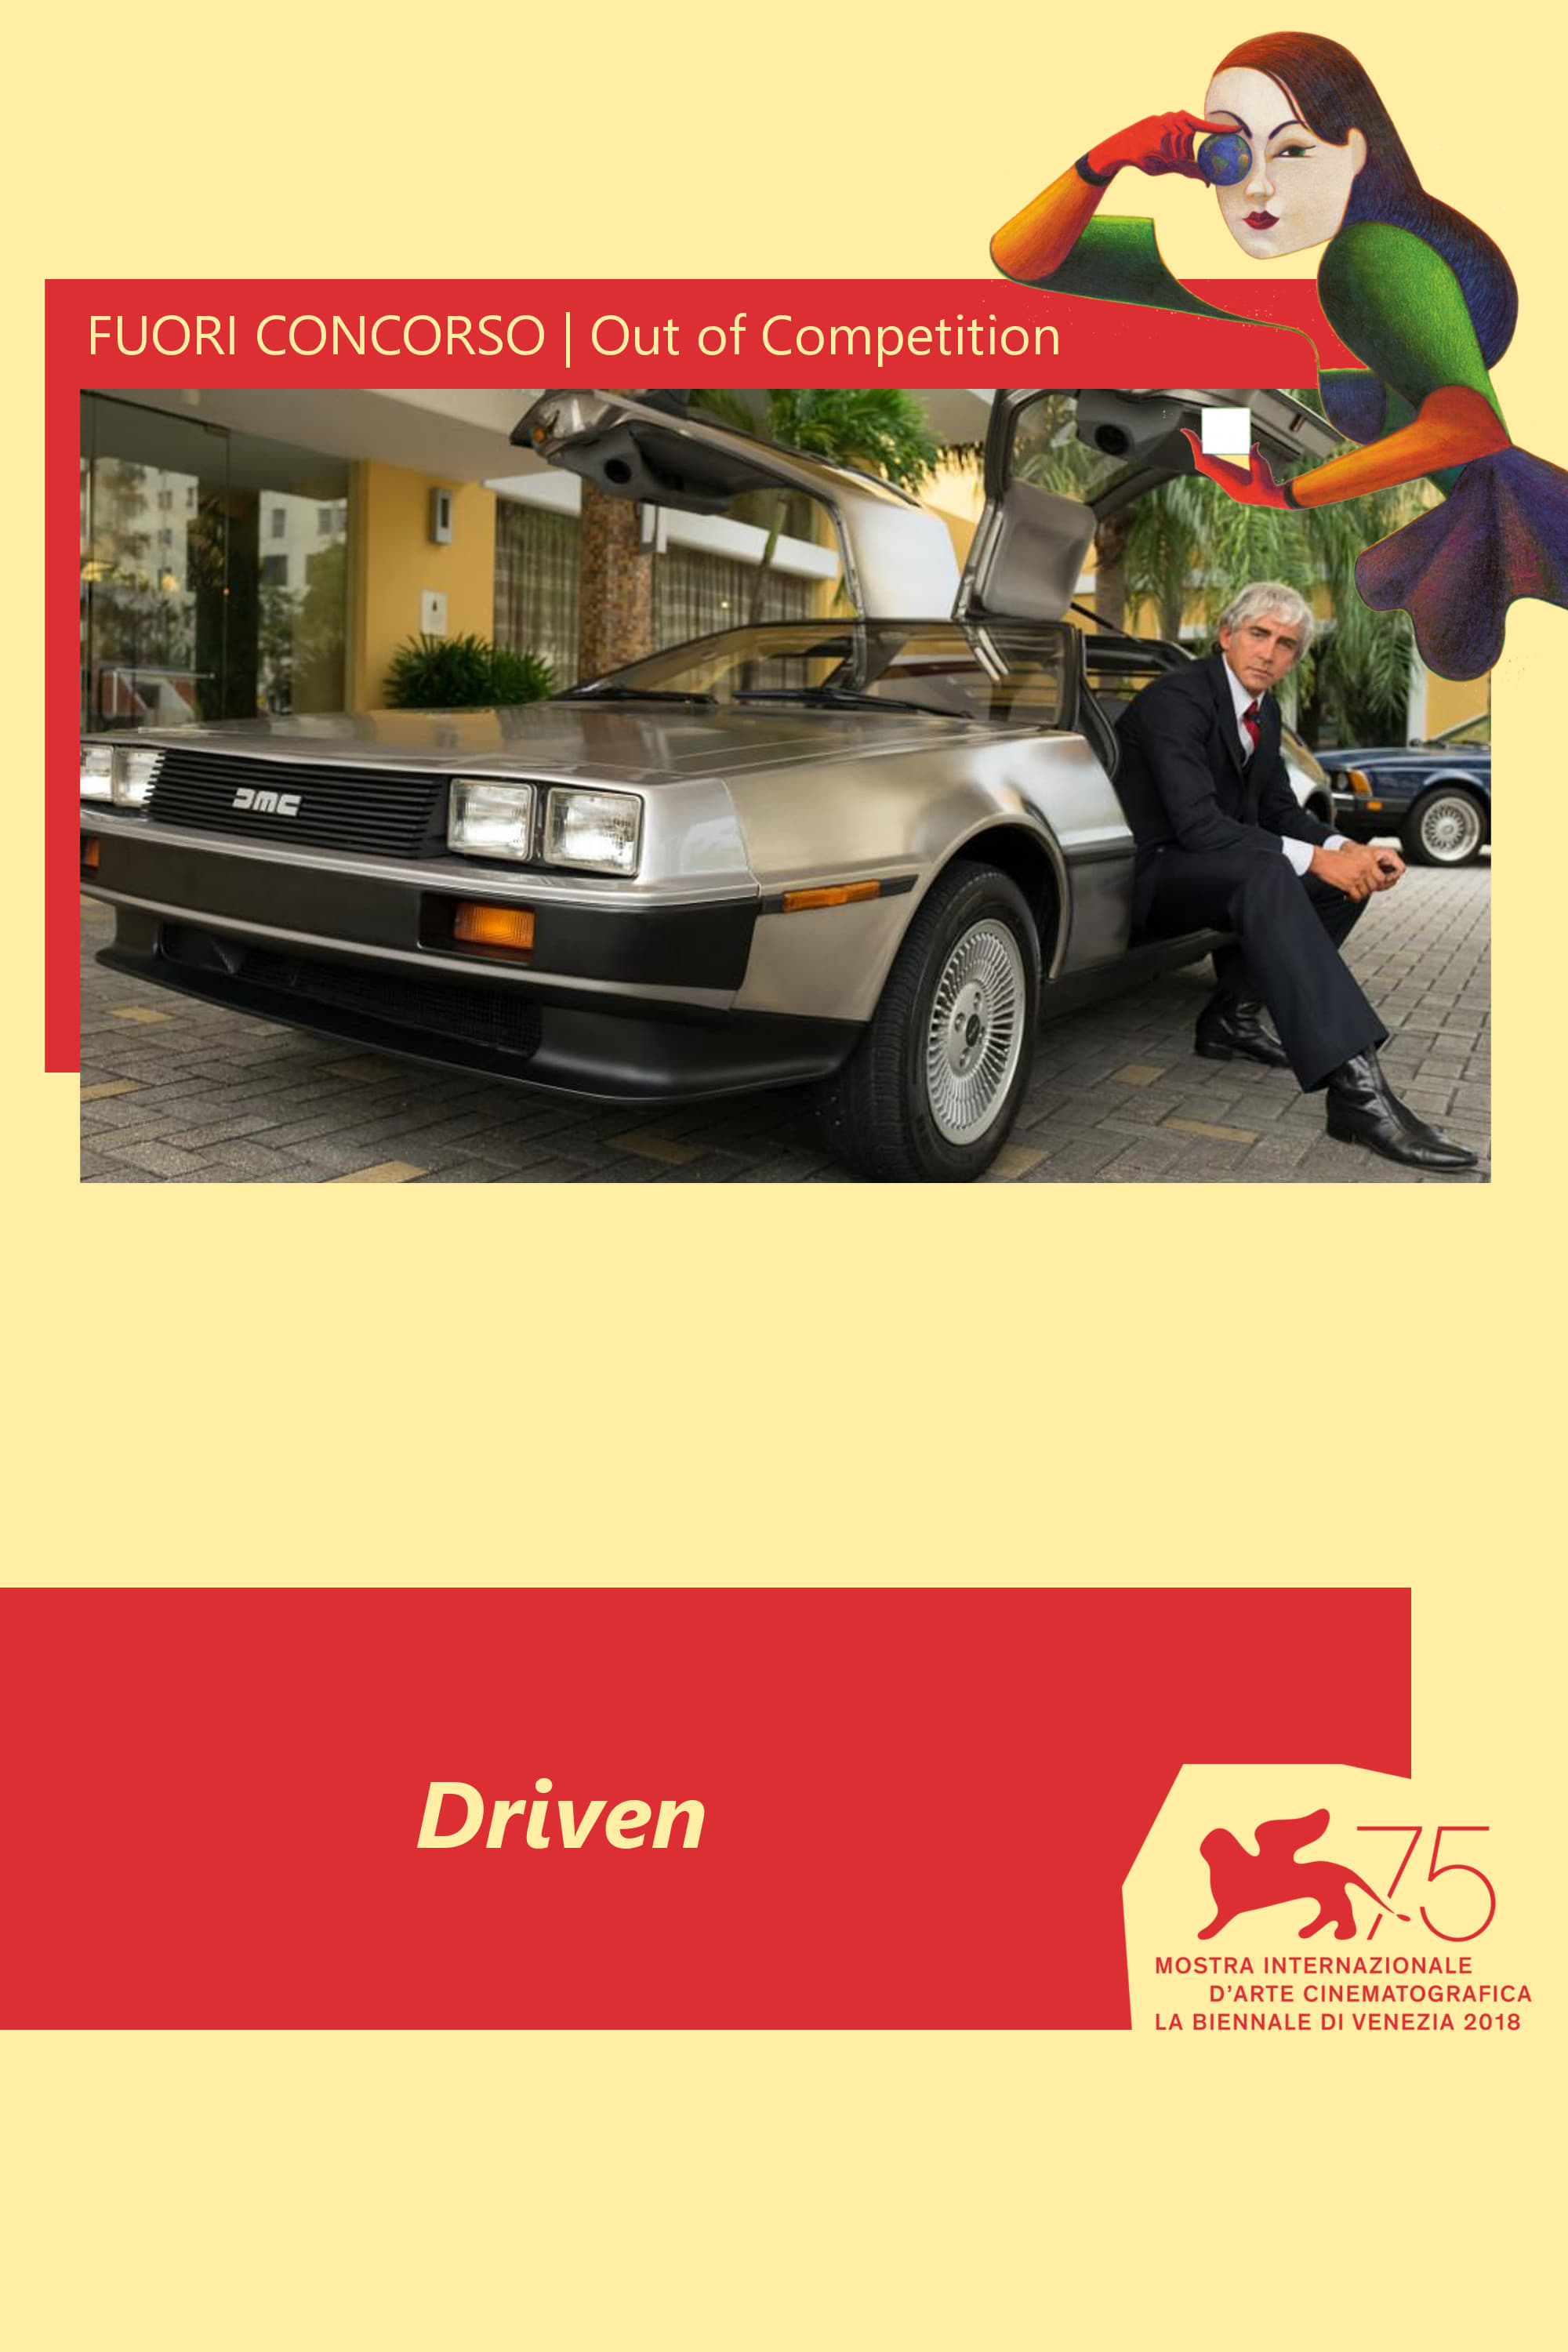 Driven - Il caso DeLorean film